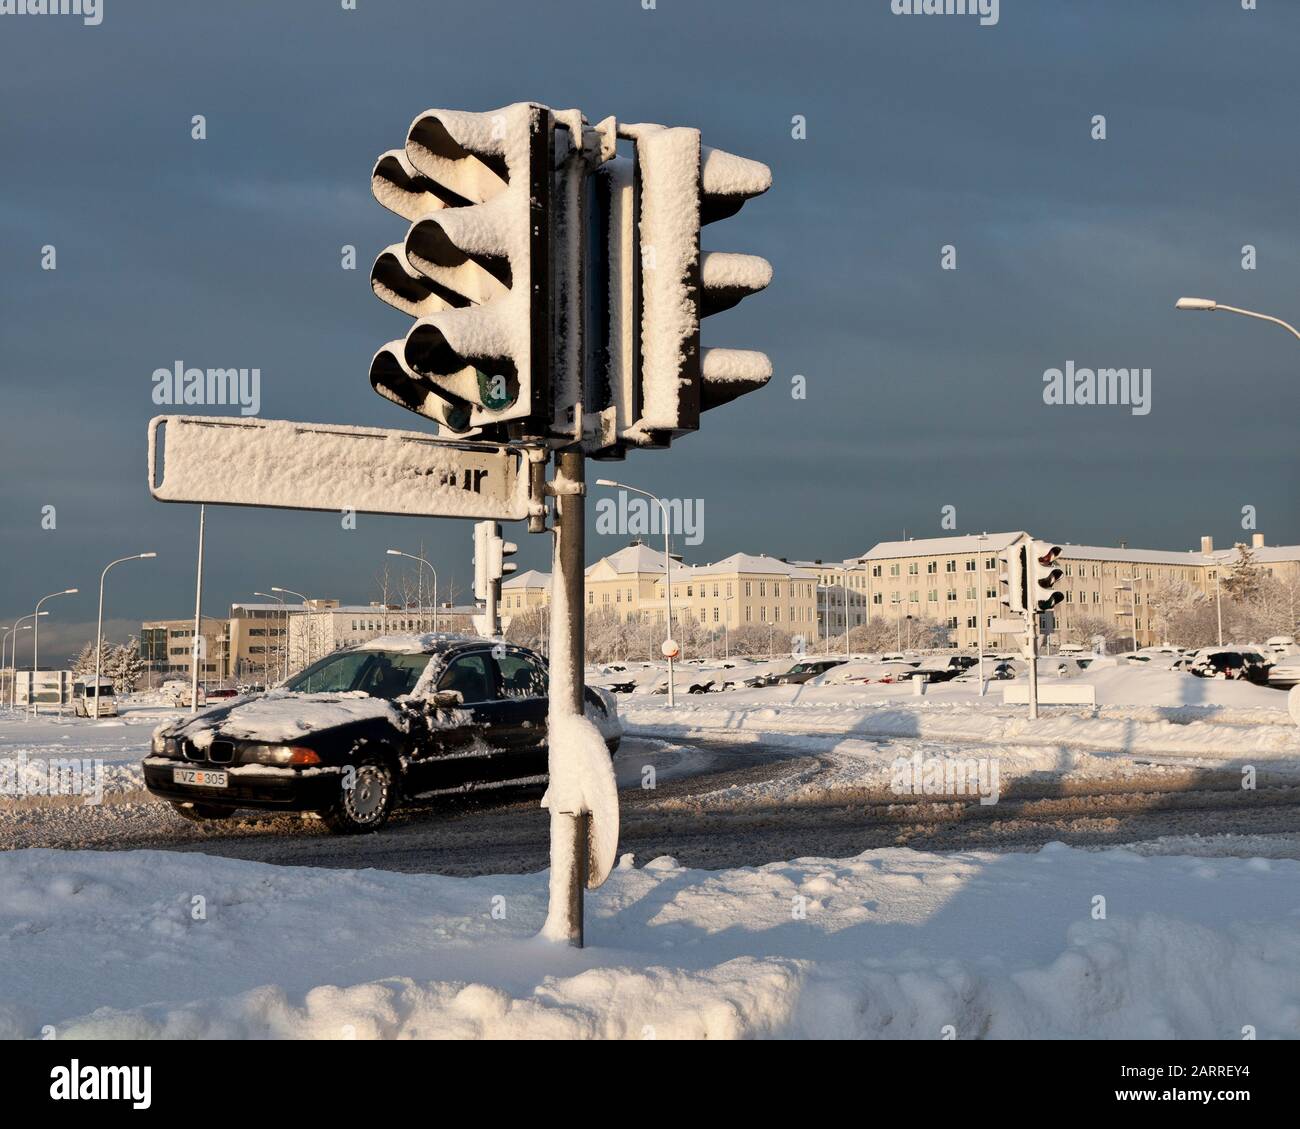 Feux de signalisation couverts de neige, Reykjavik, Islande Banque D'Images